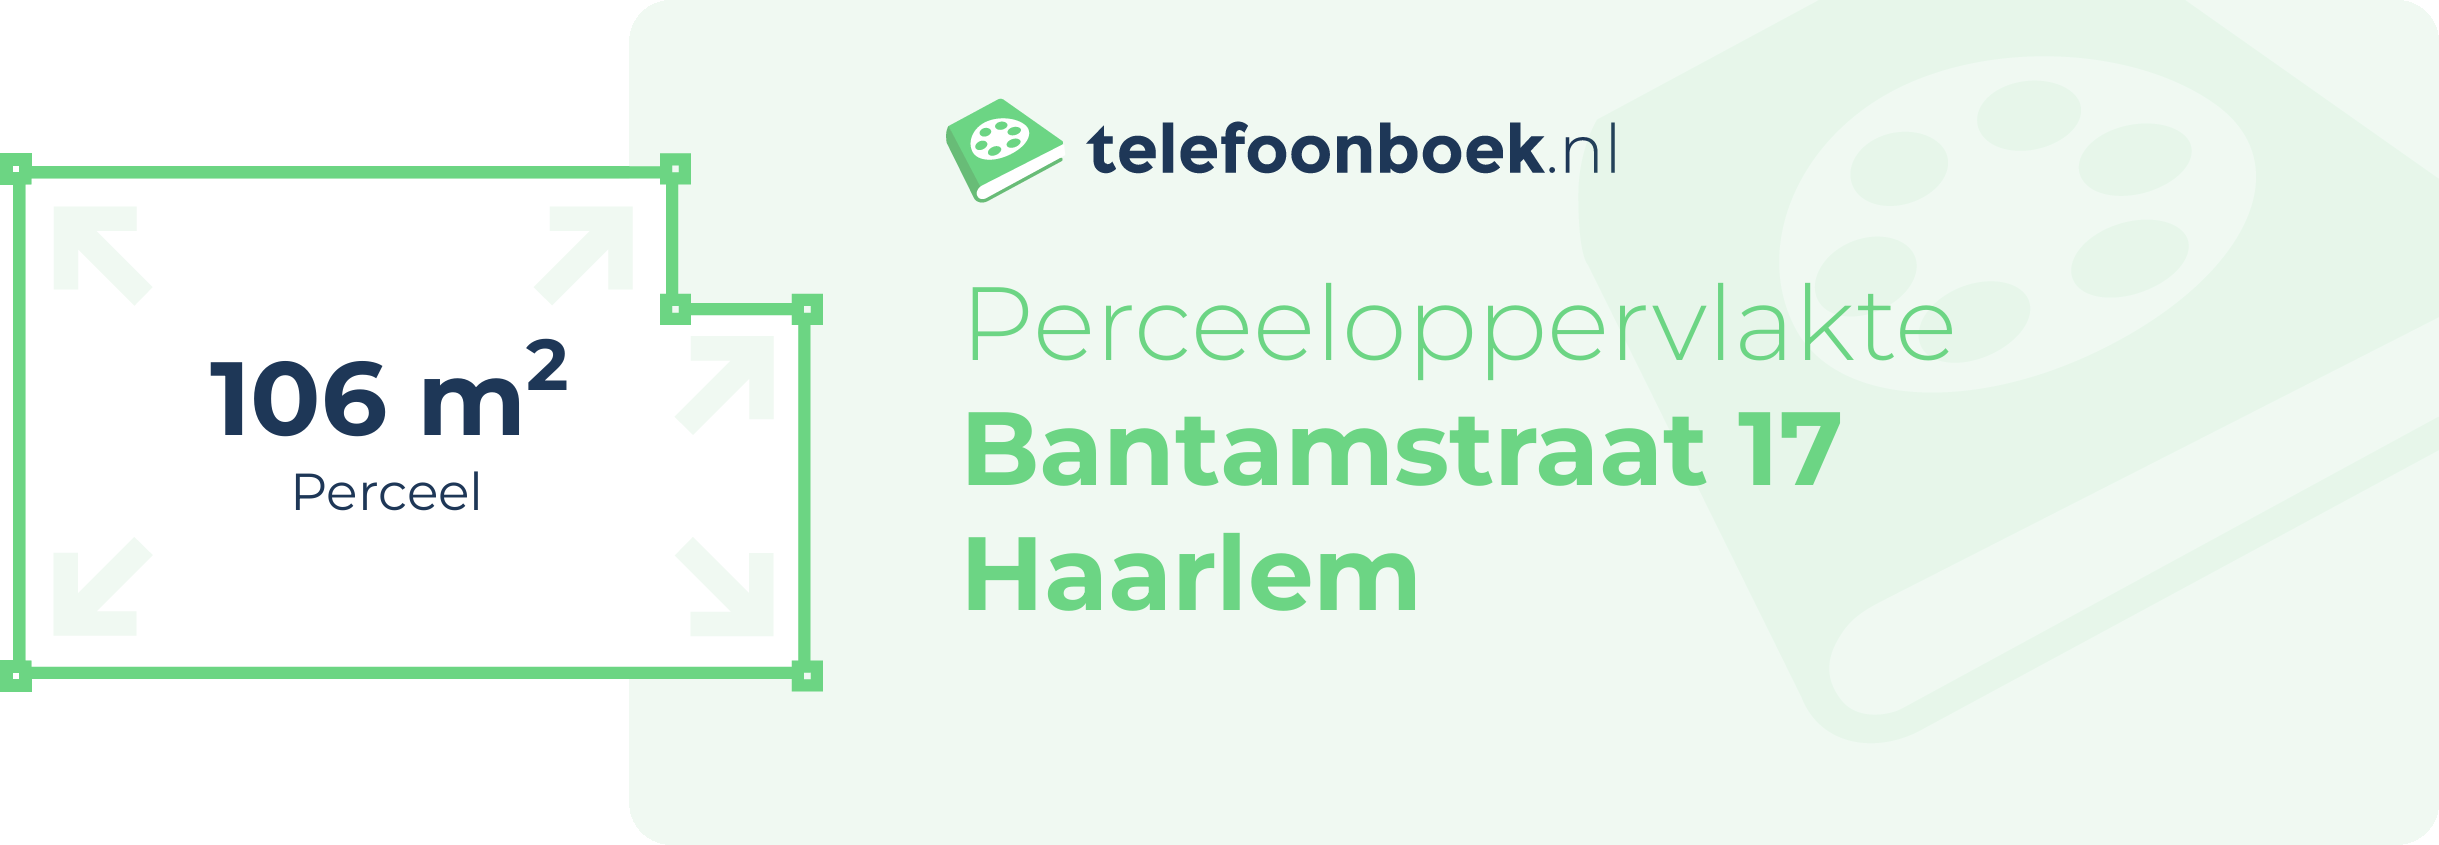 Perceeloppervlakte Bantamstraat 17 Haarlem